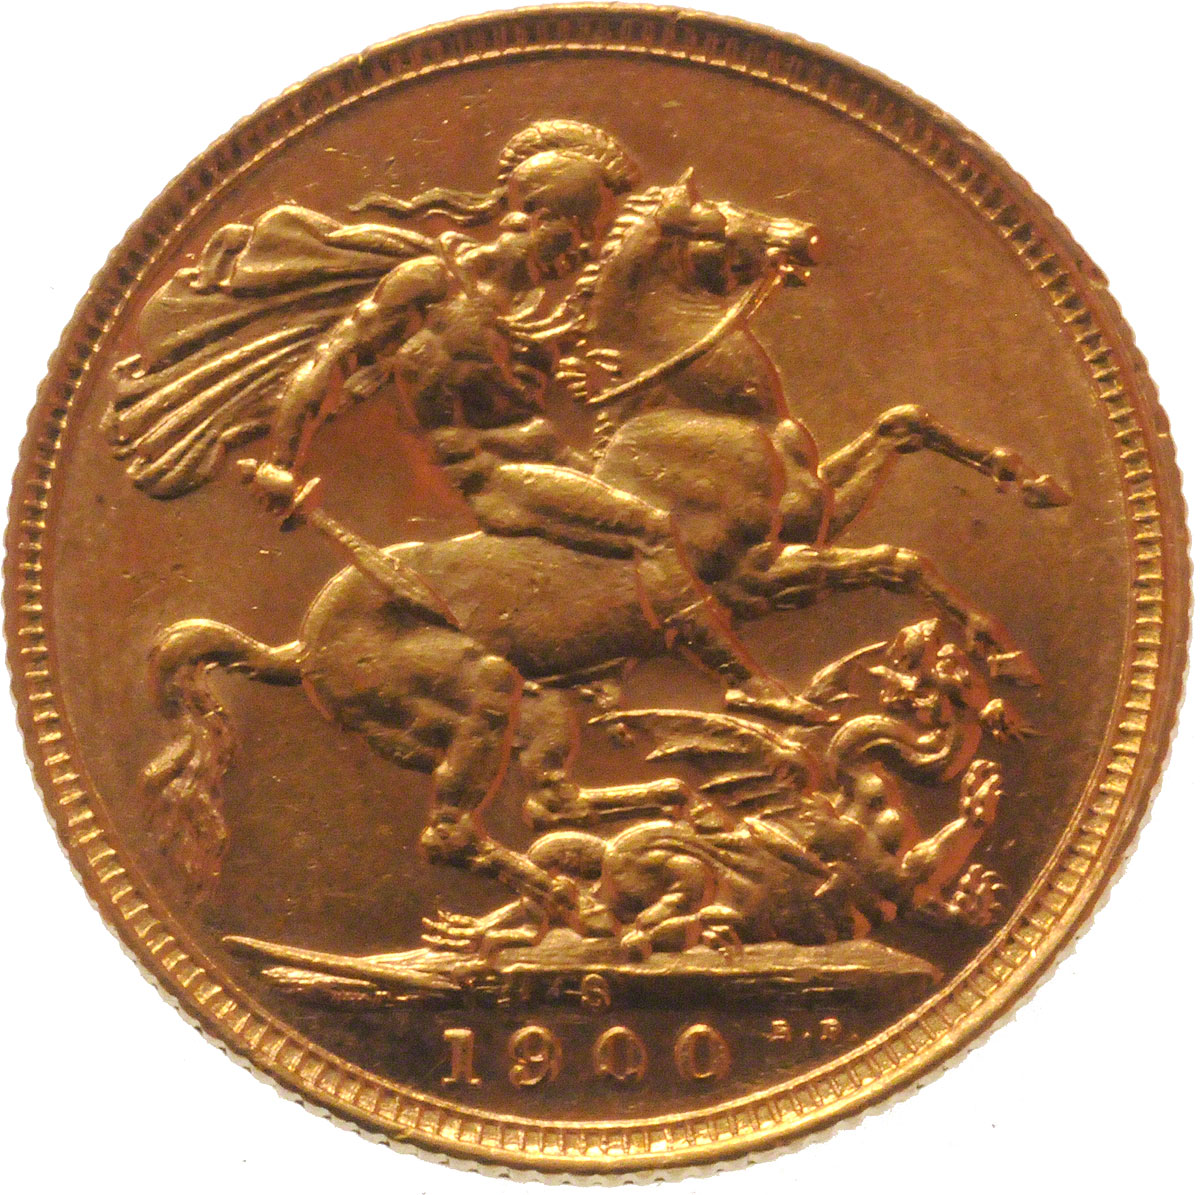 1900 Βικτώρια (Νομισματοκοπείο Σίδνεϊ)